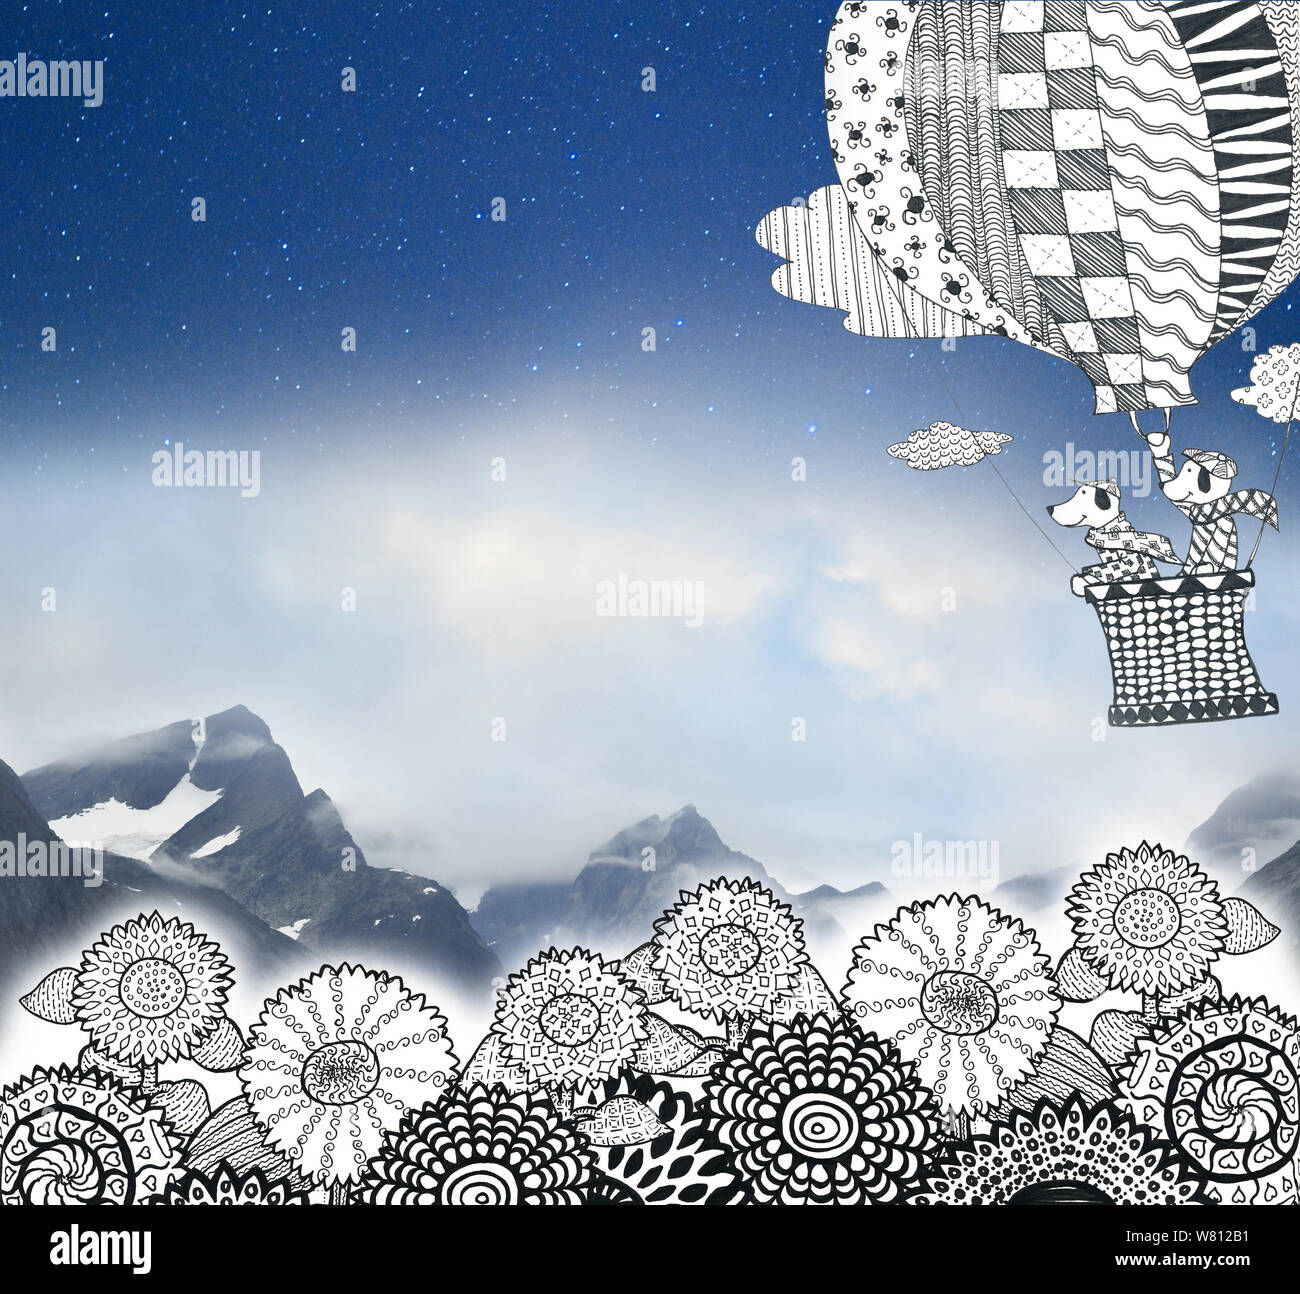 Illustrazione Pattern balloon cani girasoli montagne day night sky  da jziprian Foto Stock